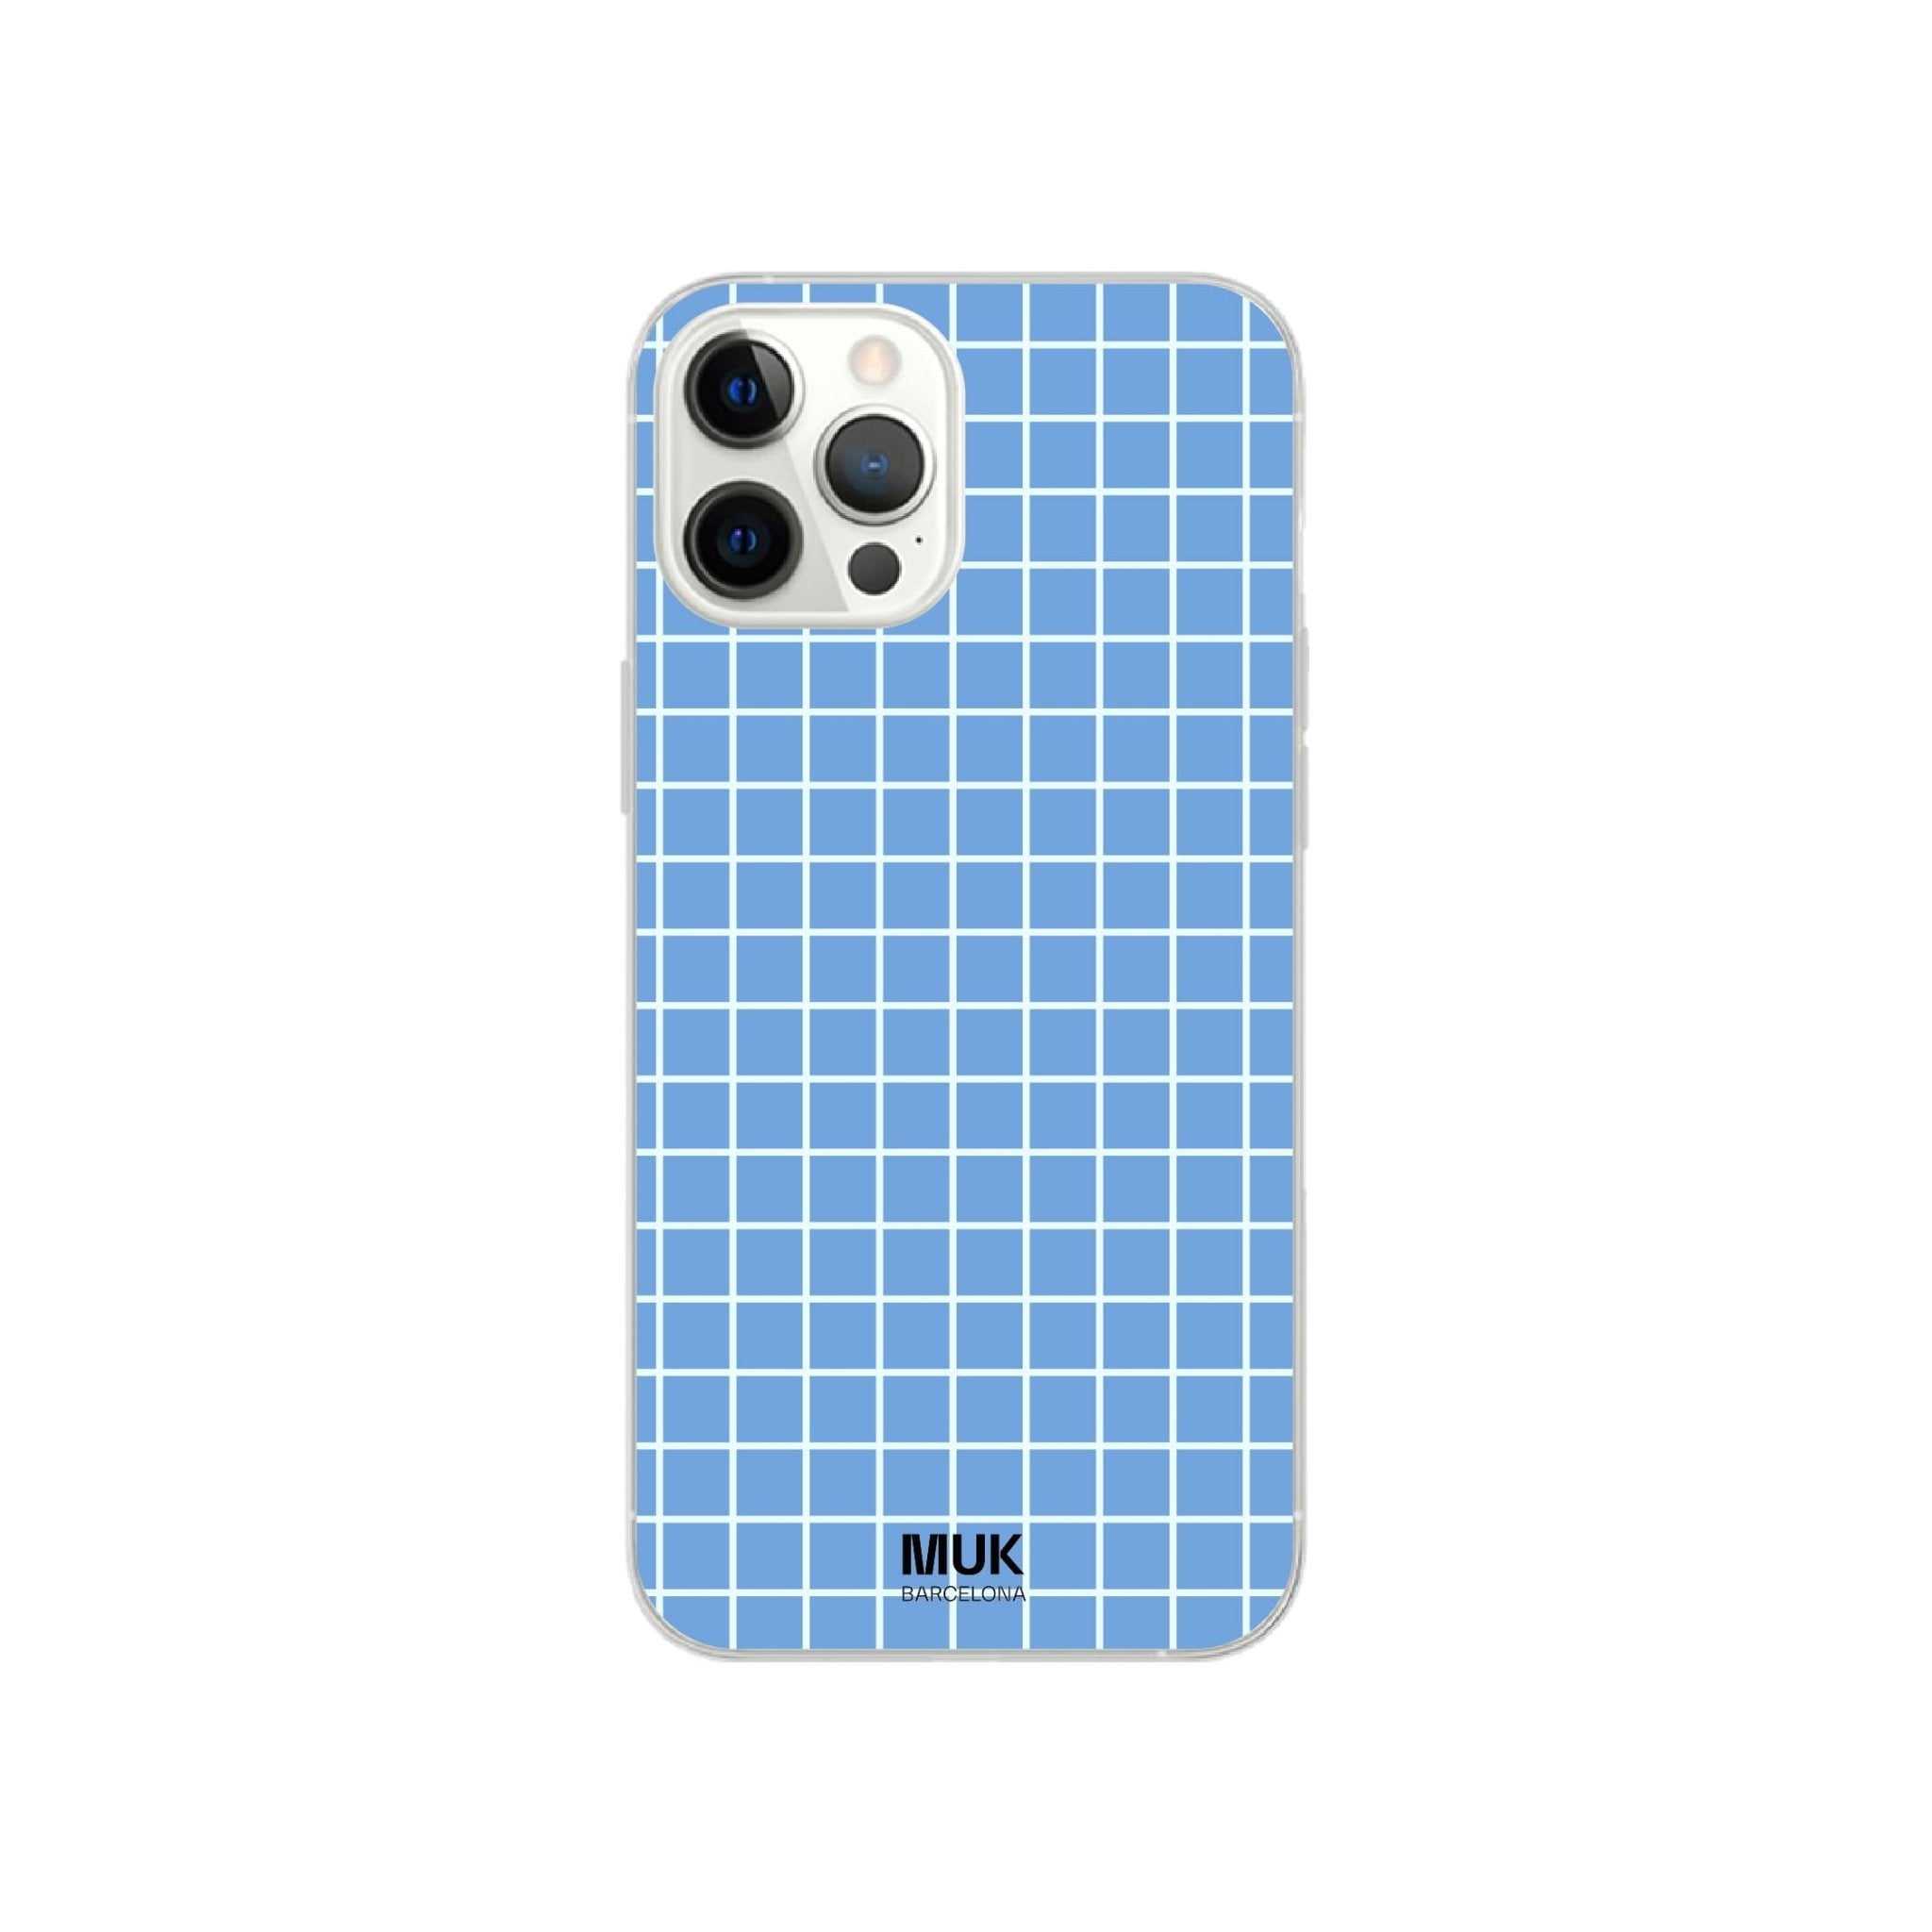 Funda de móvil Transparente con el fondo azul claro y cuadrados blancos.
